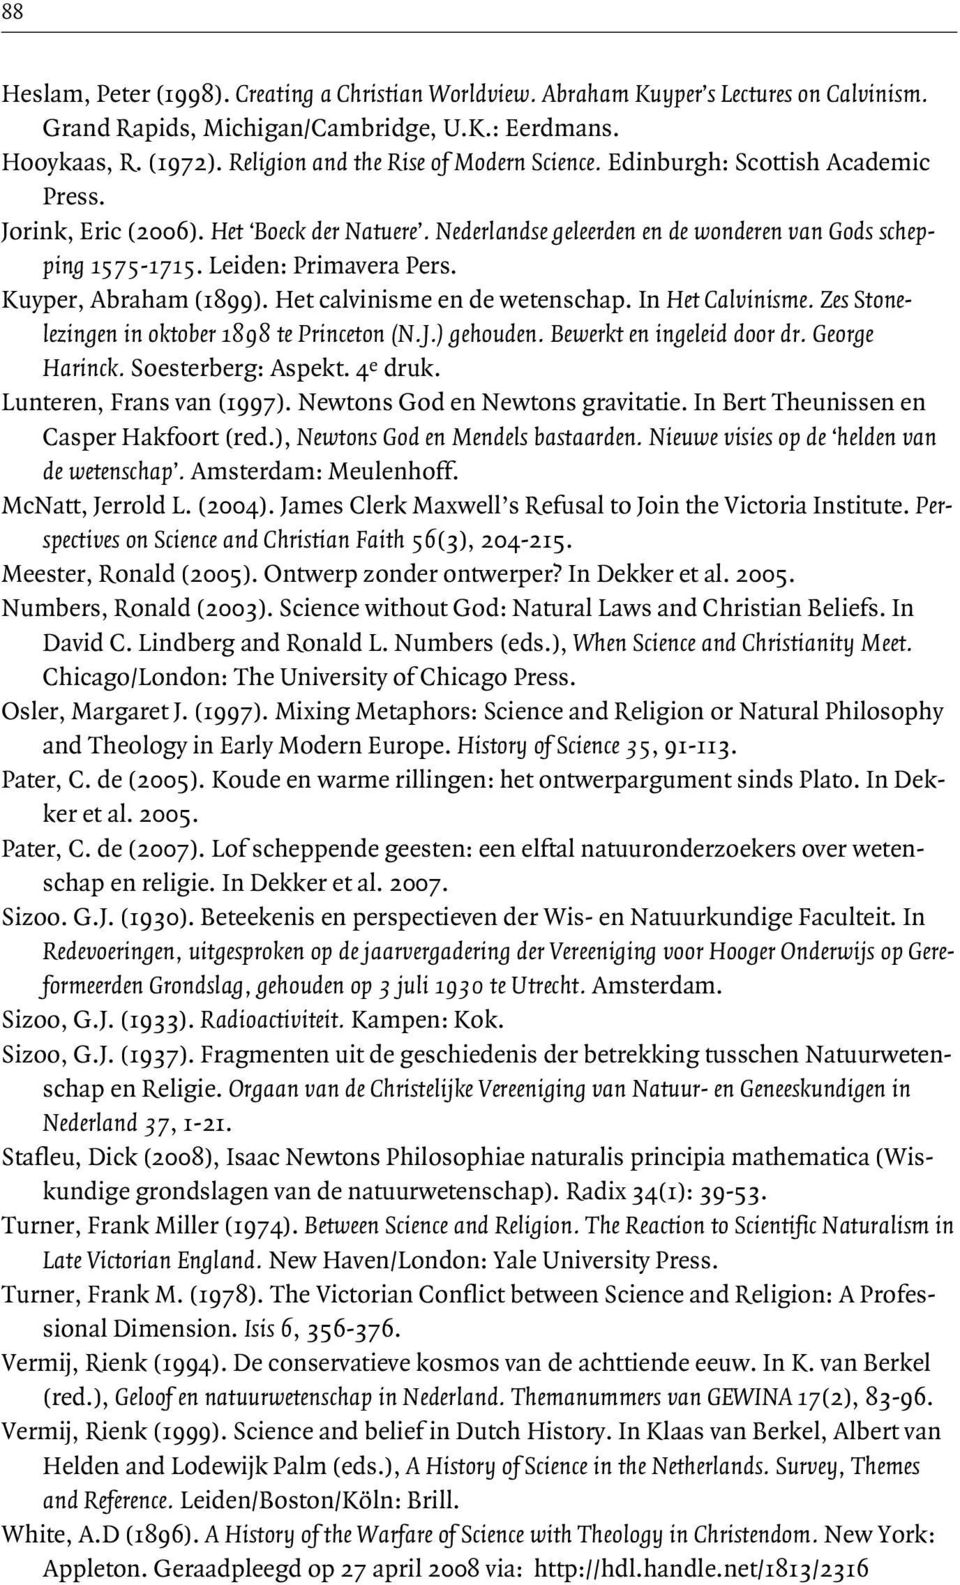 Leiden: Primavera Pers. Kuyper, Abraham (1899). Het calvinisme en de wetenschap. In Het Calvinisme. Zes Stonelezingen in oktober 1898 te Princeton (N.J.) gehouden. Bewerkt en ingeleid door dr.